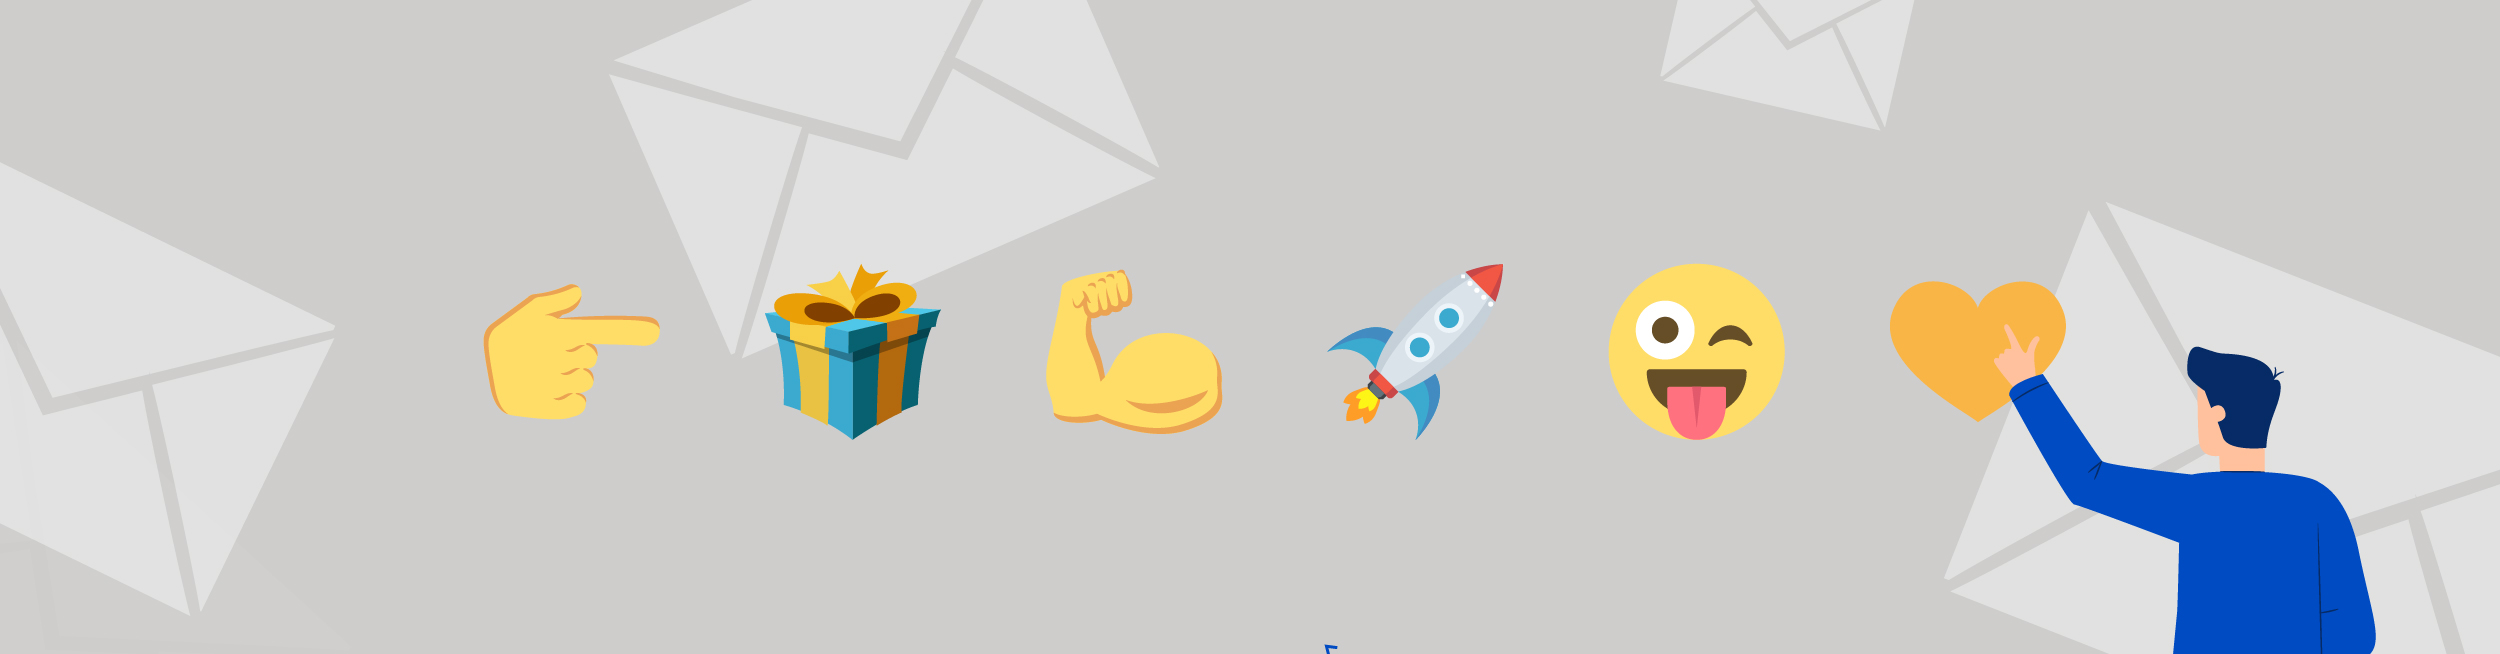 emojis para correos electrónicos